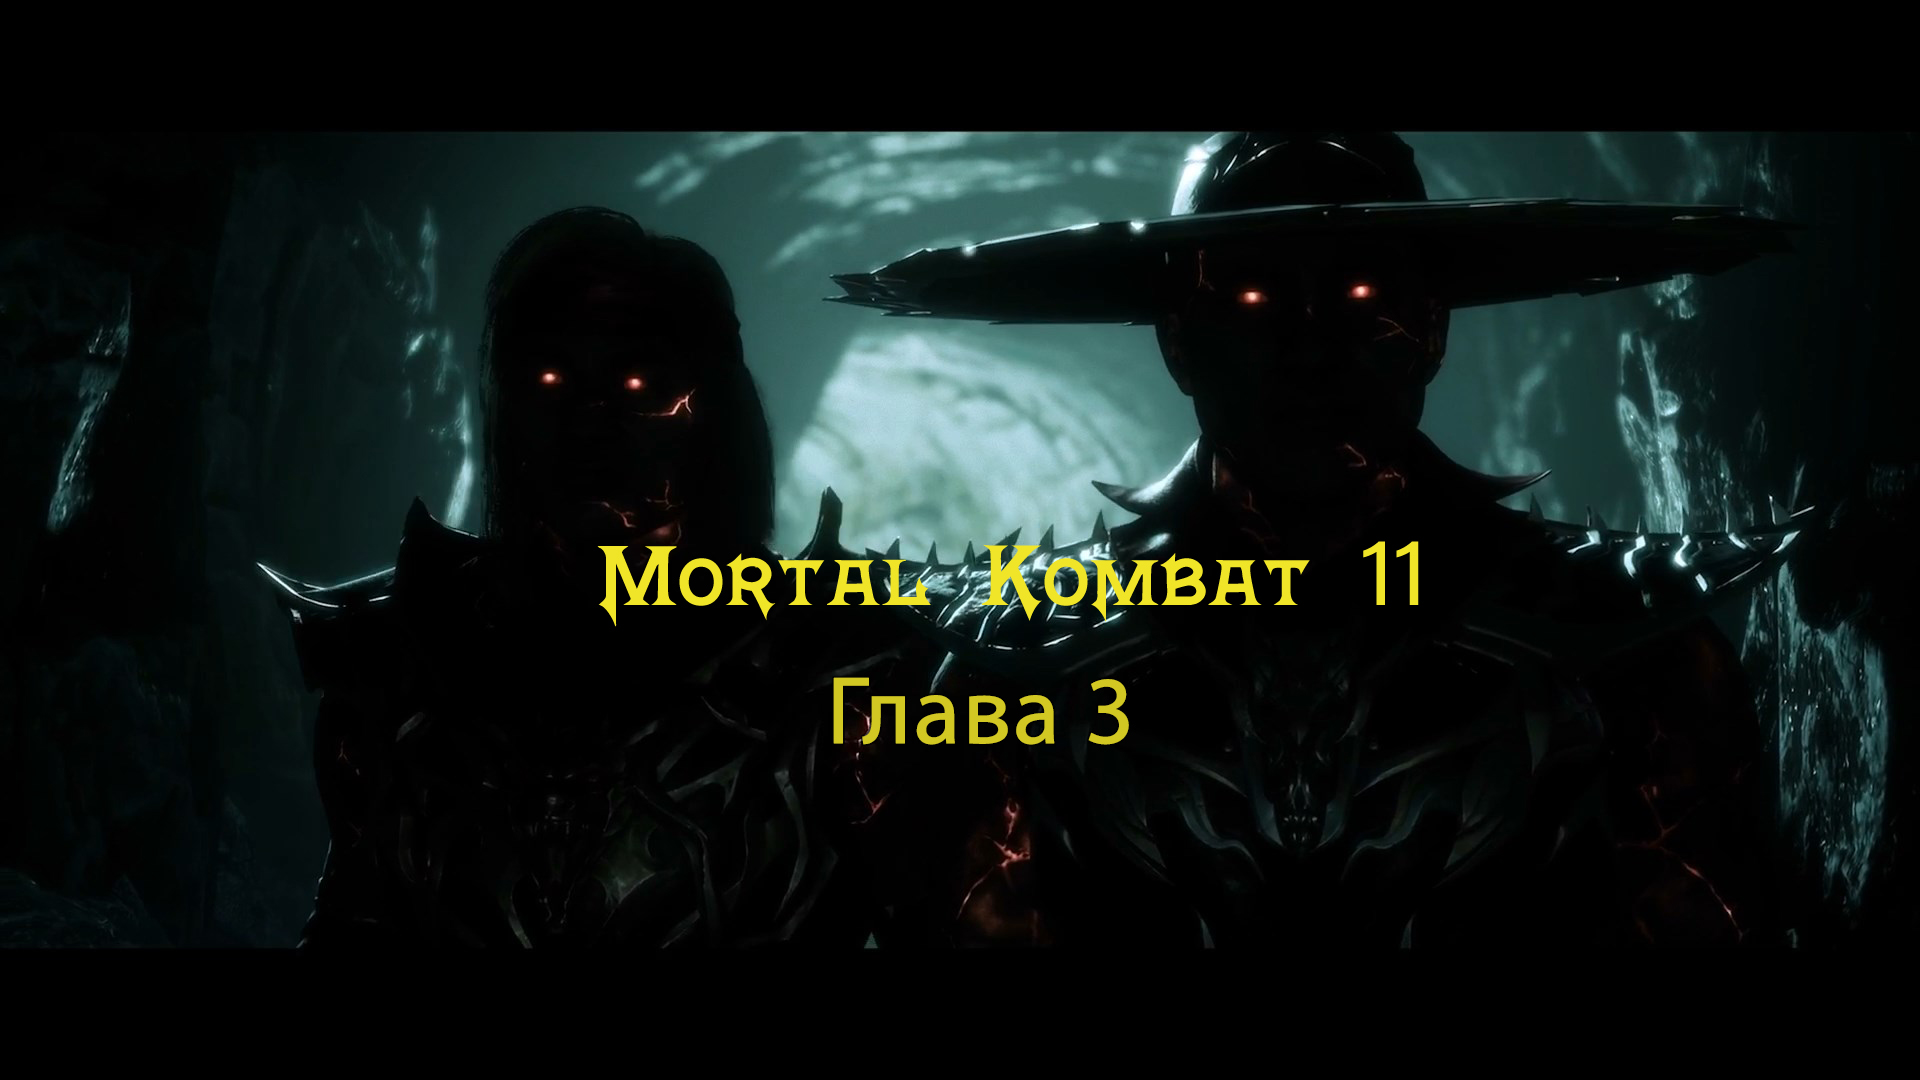 Mortal Kombat 11 Aftermath / Ultimate  - Прохождение - Глава 3: Монахи Шаолиня (Сюжет)